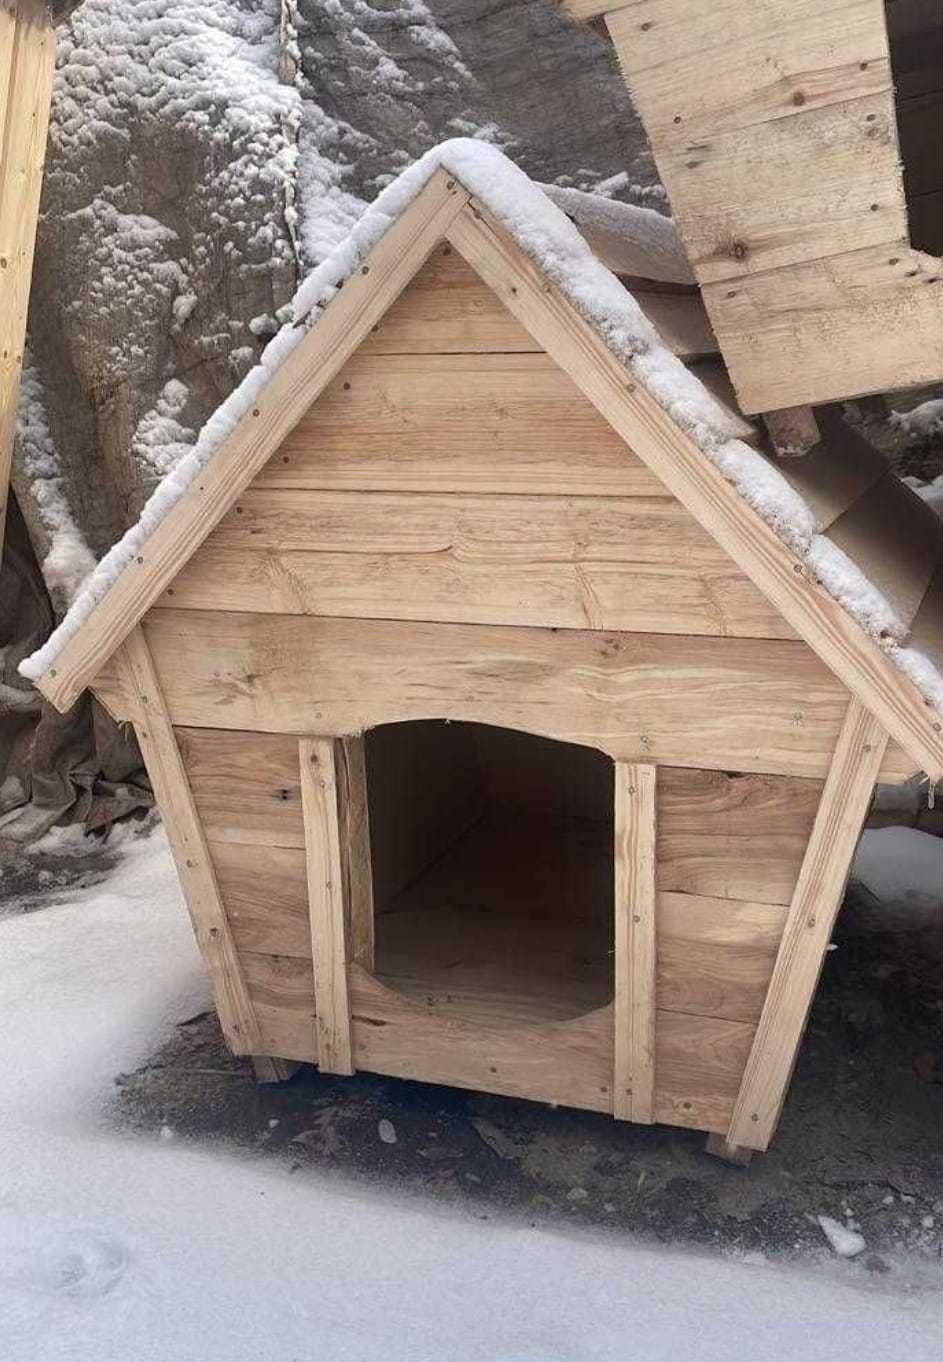 Простая будка большой собаки овчарка вольеры для собак утепленная зиму